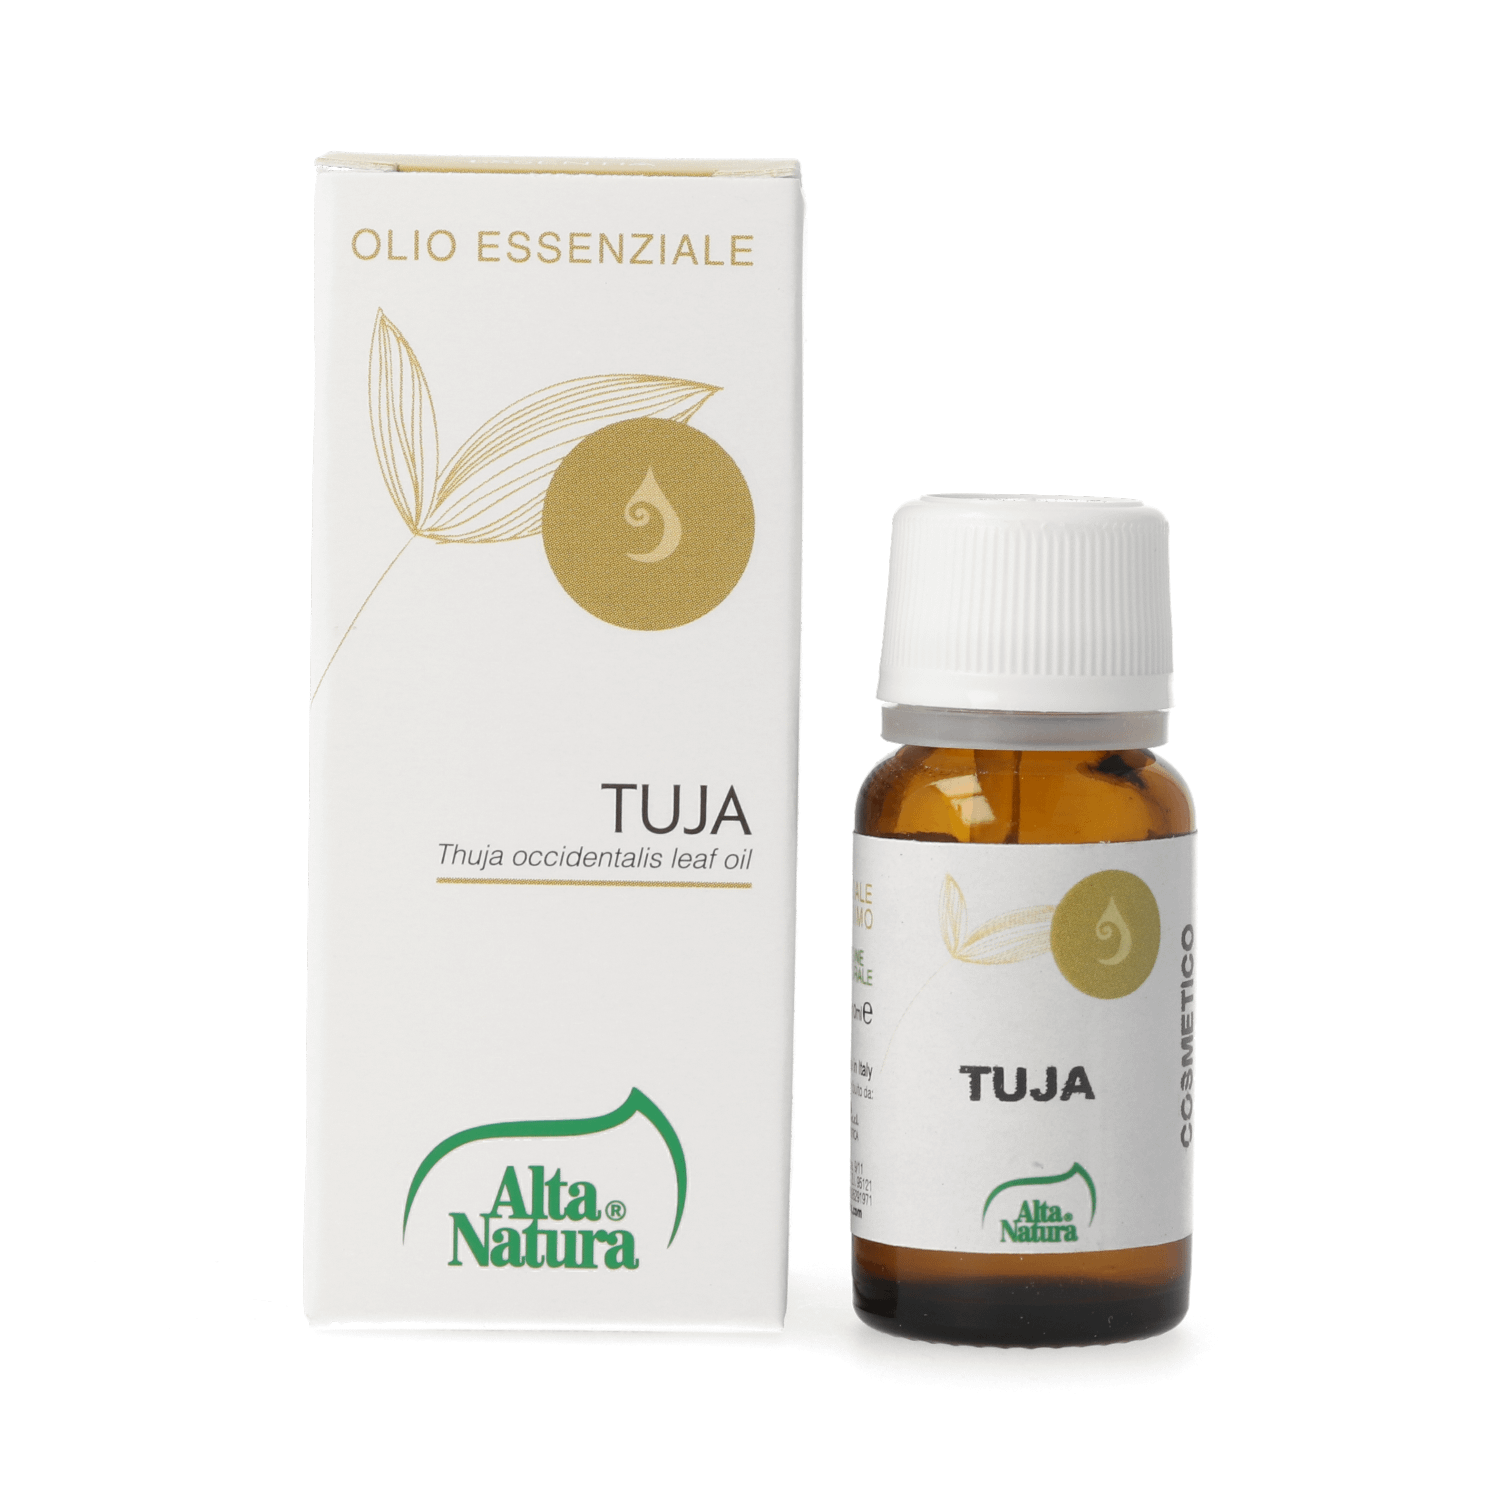 Olio essenziale di Tuja